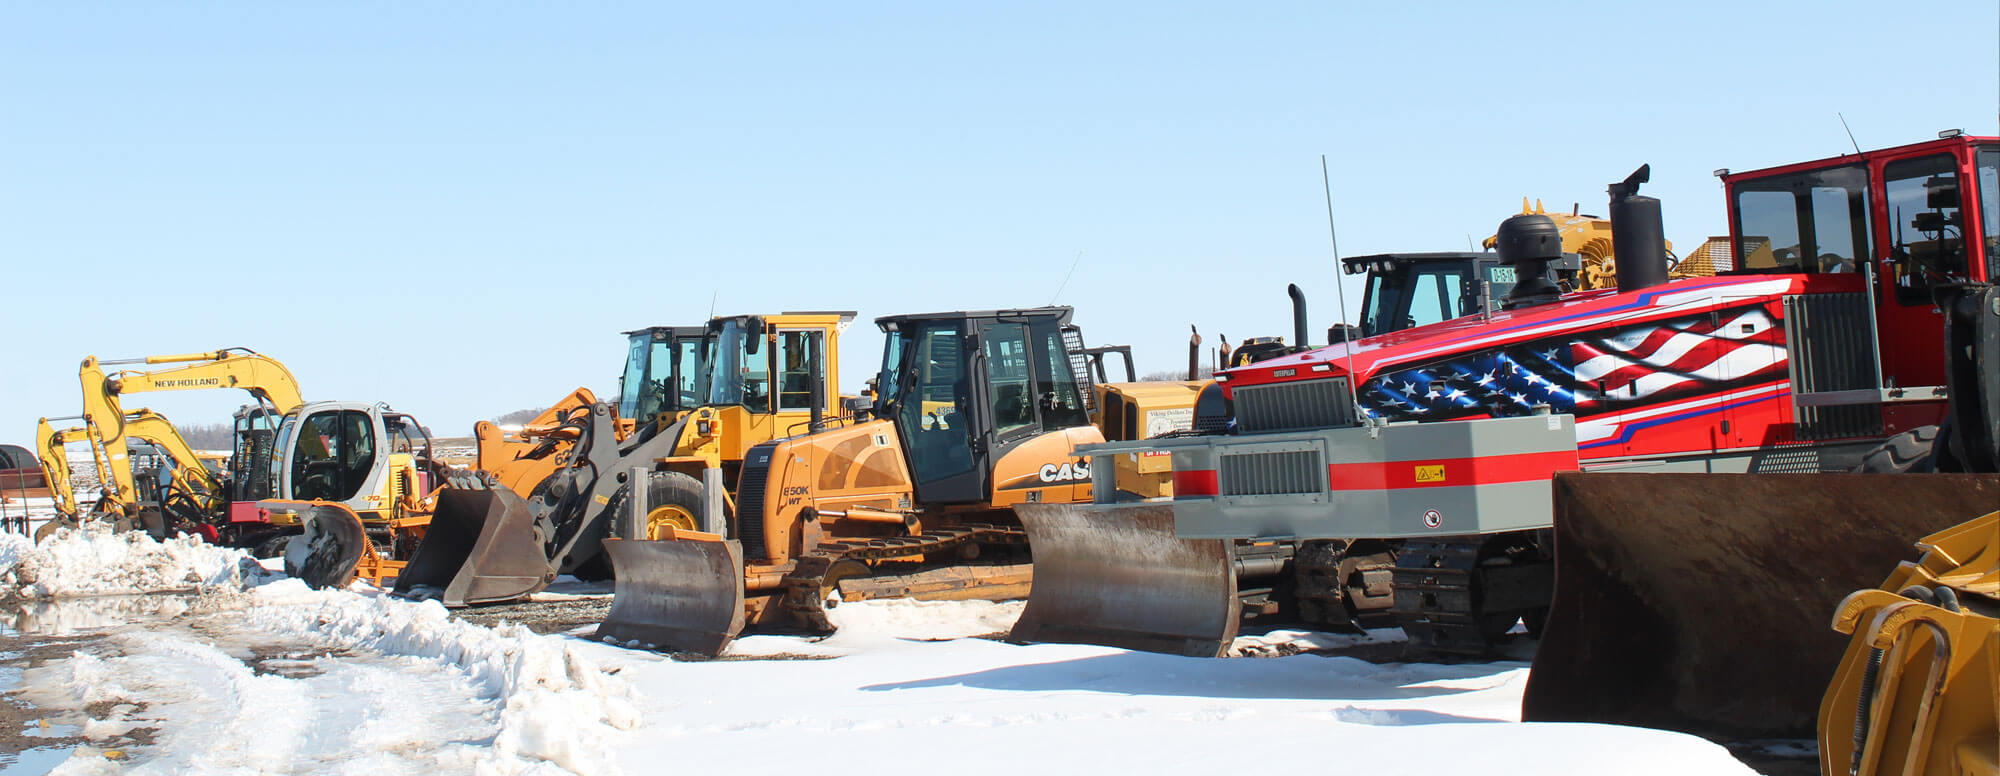 Row of Dahle Enterprises' excavating equipment in winter